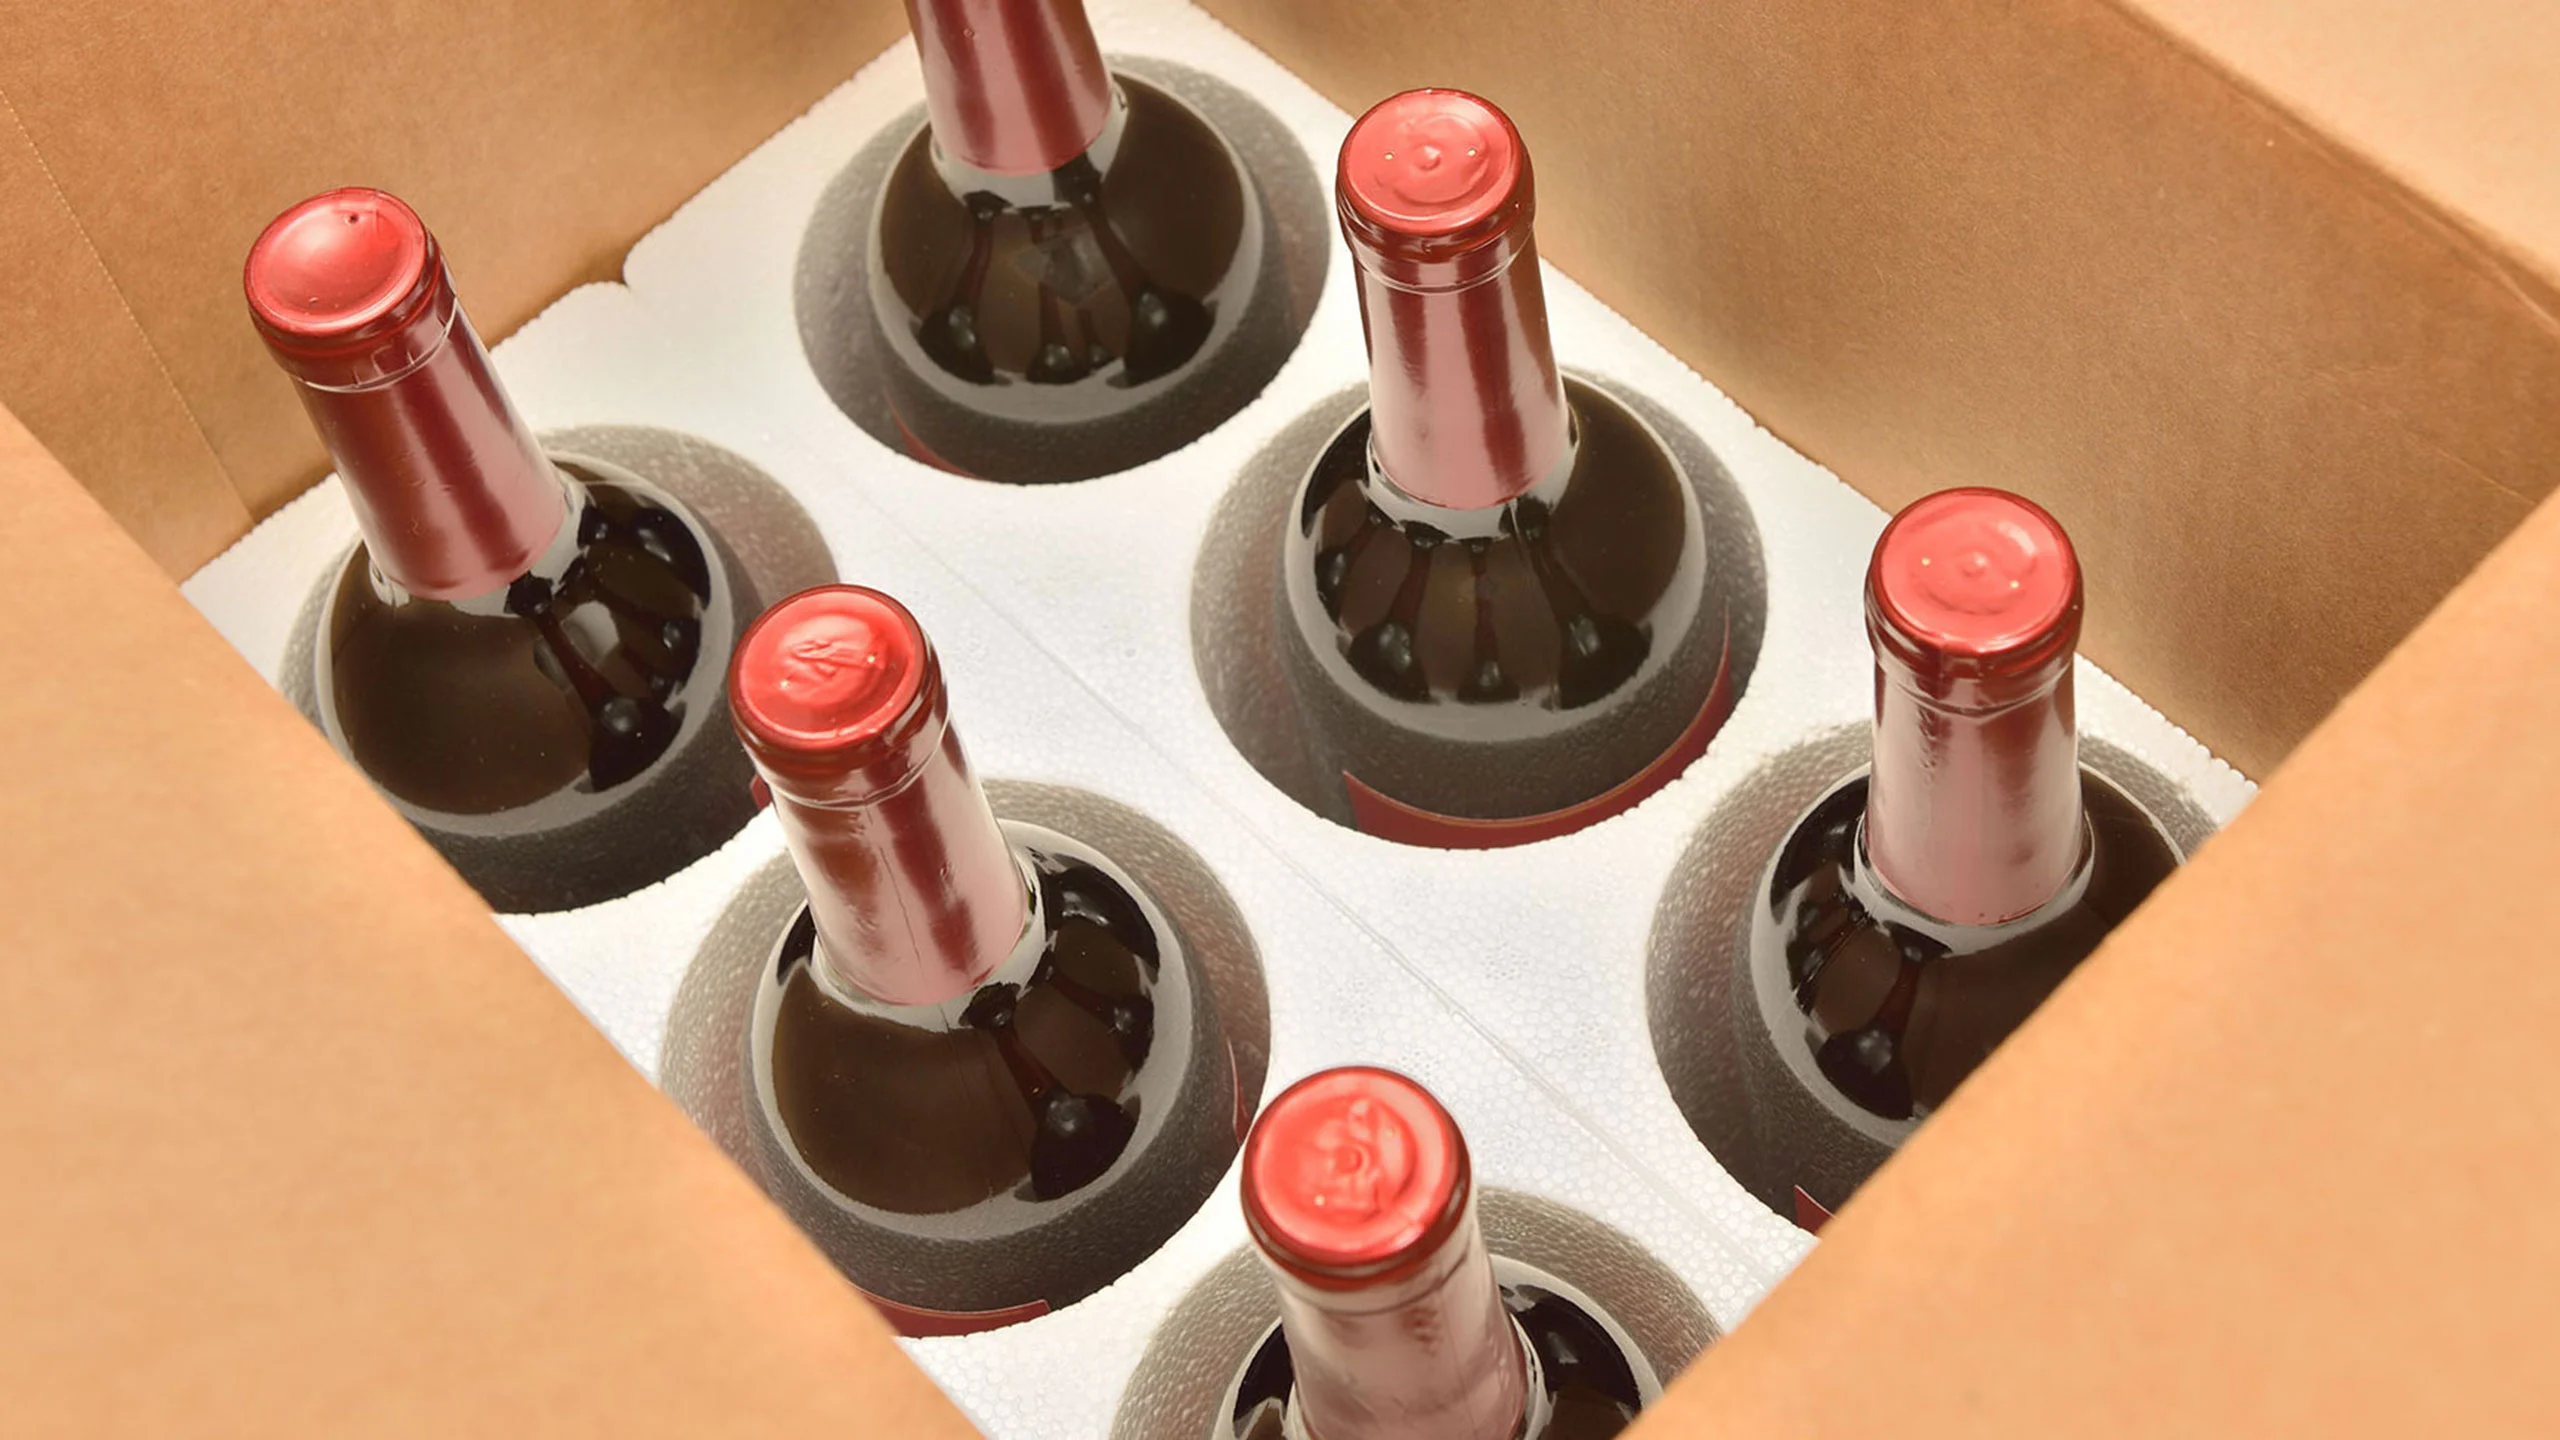 Casa de subastas pierde $400,000 dls en vino que se “cocinó” durante envío